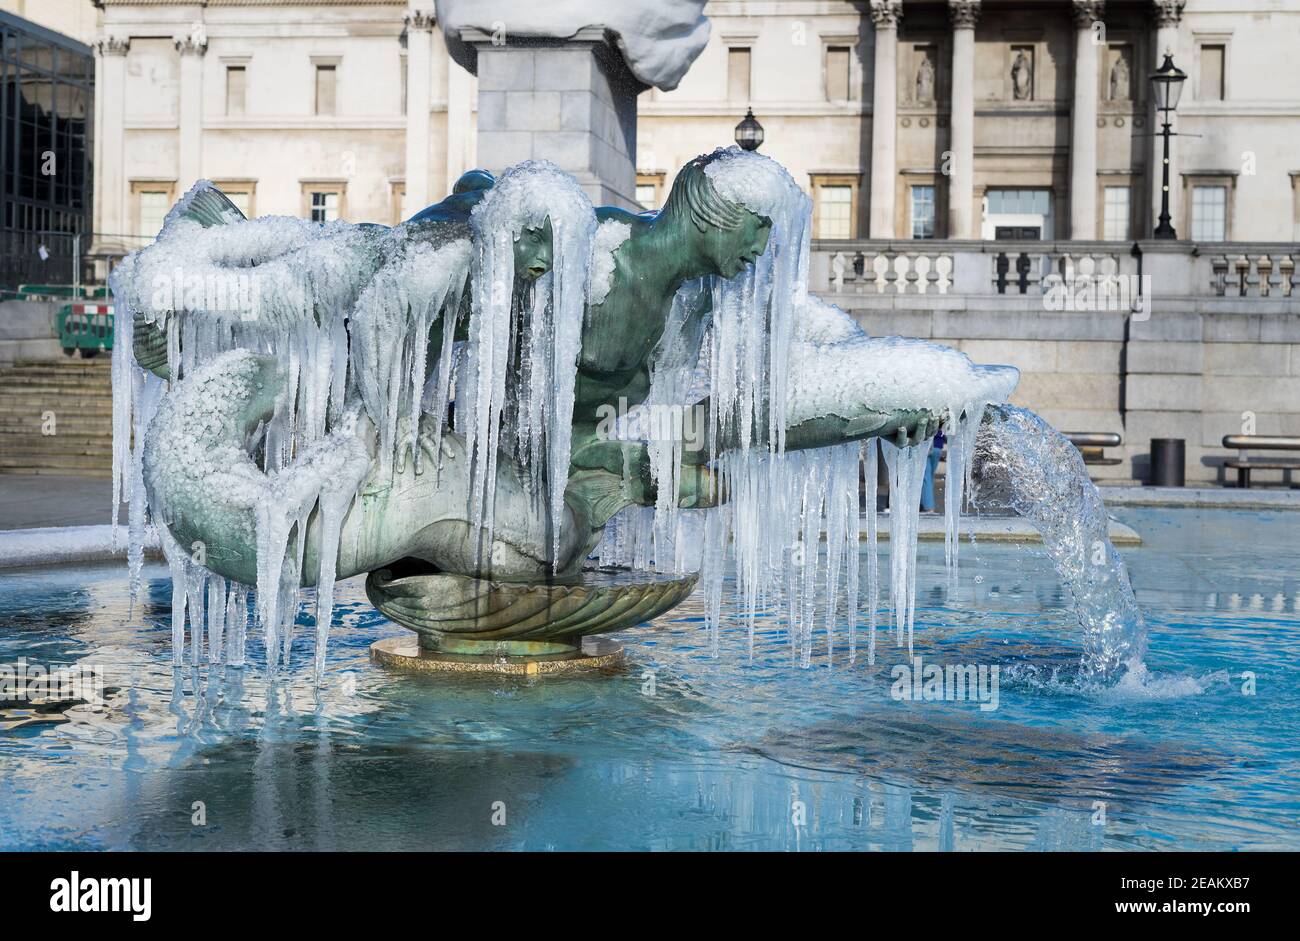 Gefrorene Brunnen Statuen von Trafalgar Square in London. Eiszapfen, die mystisch an einem bronzenen Brunnen hängen Stockfoto